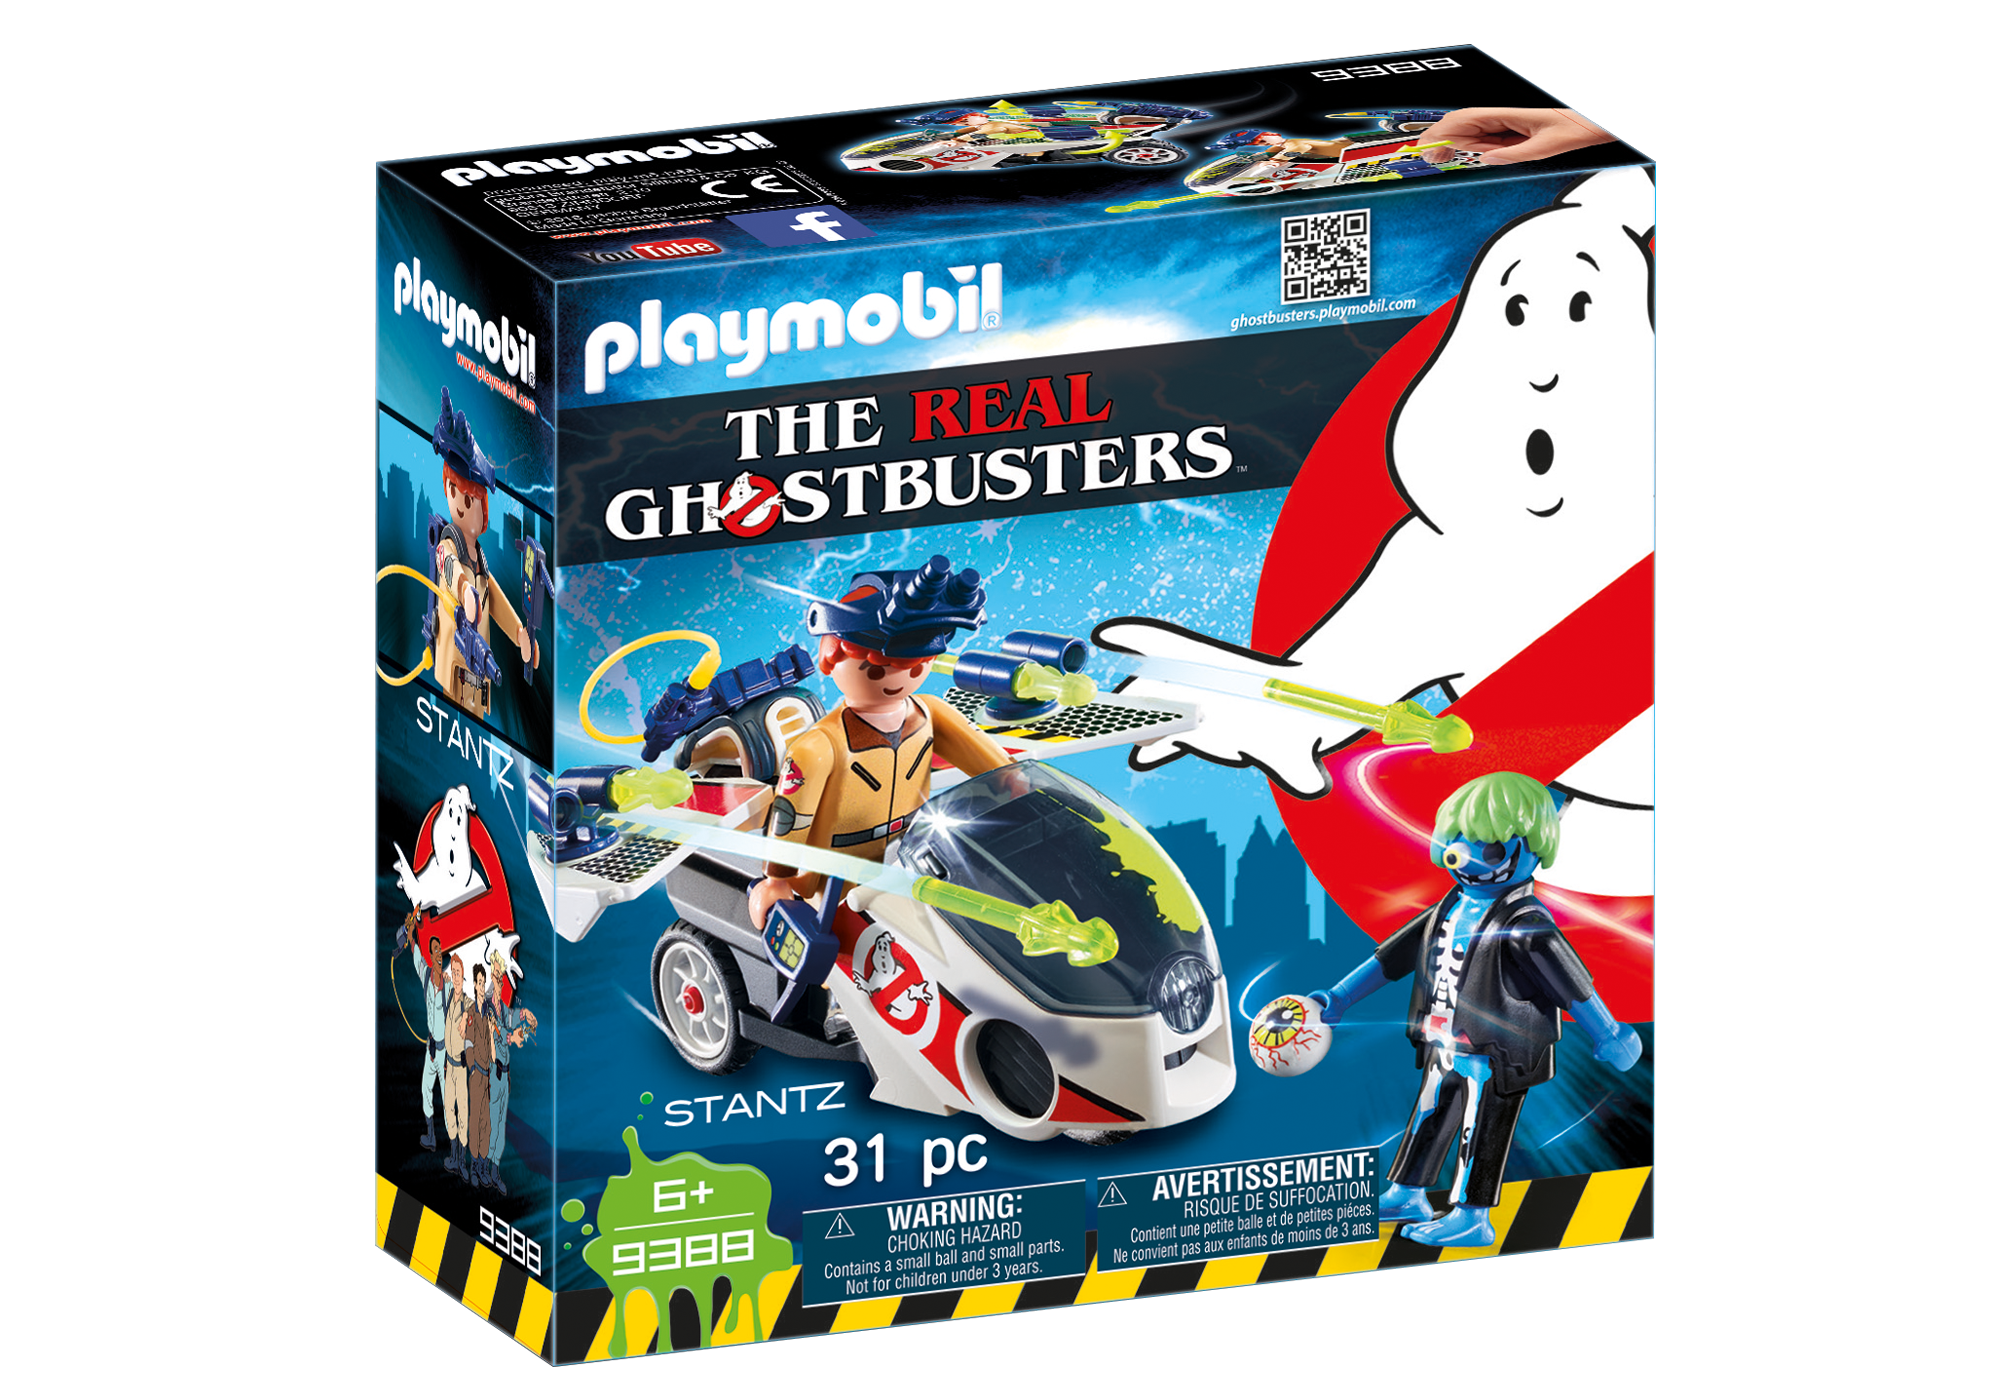 Playmobil Ghostbusters - Page 3 9388_product_box_front?locale=de-DE,de,*&$pdp_product_main_xl$